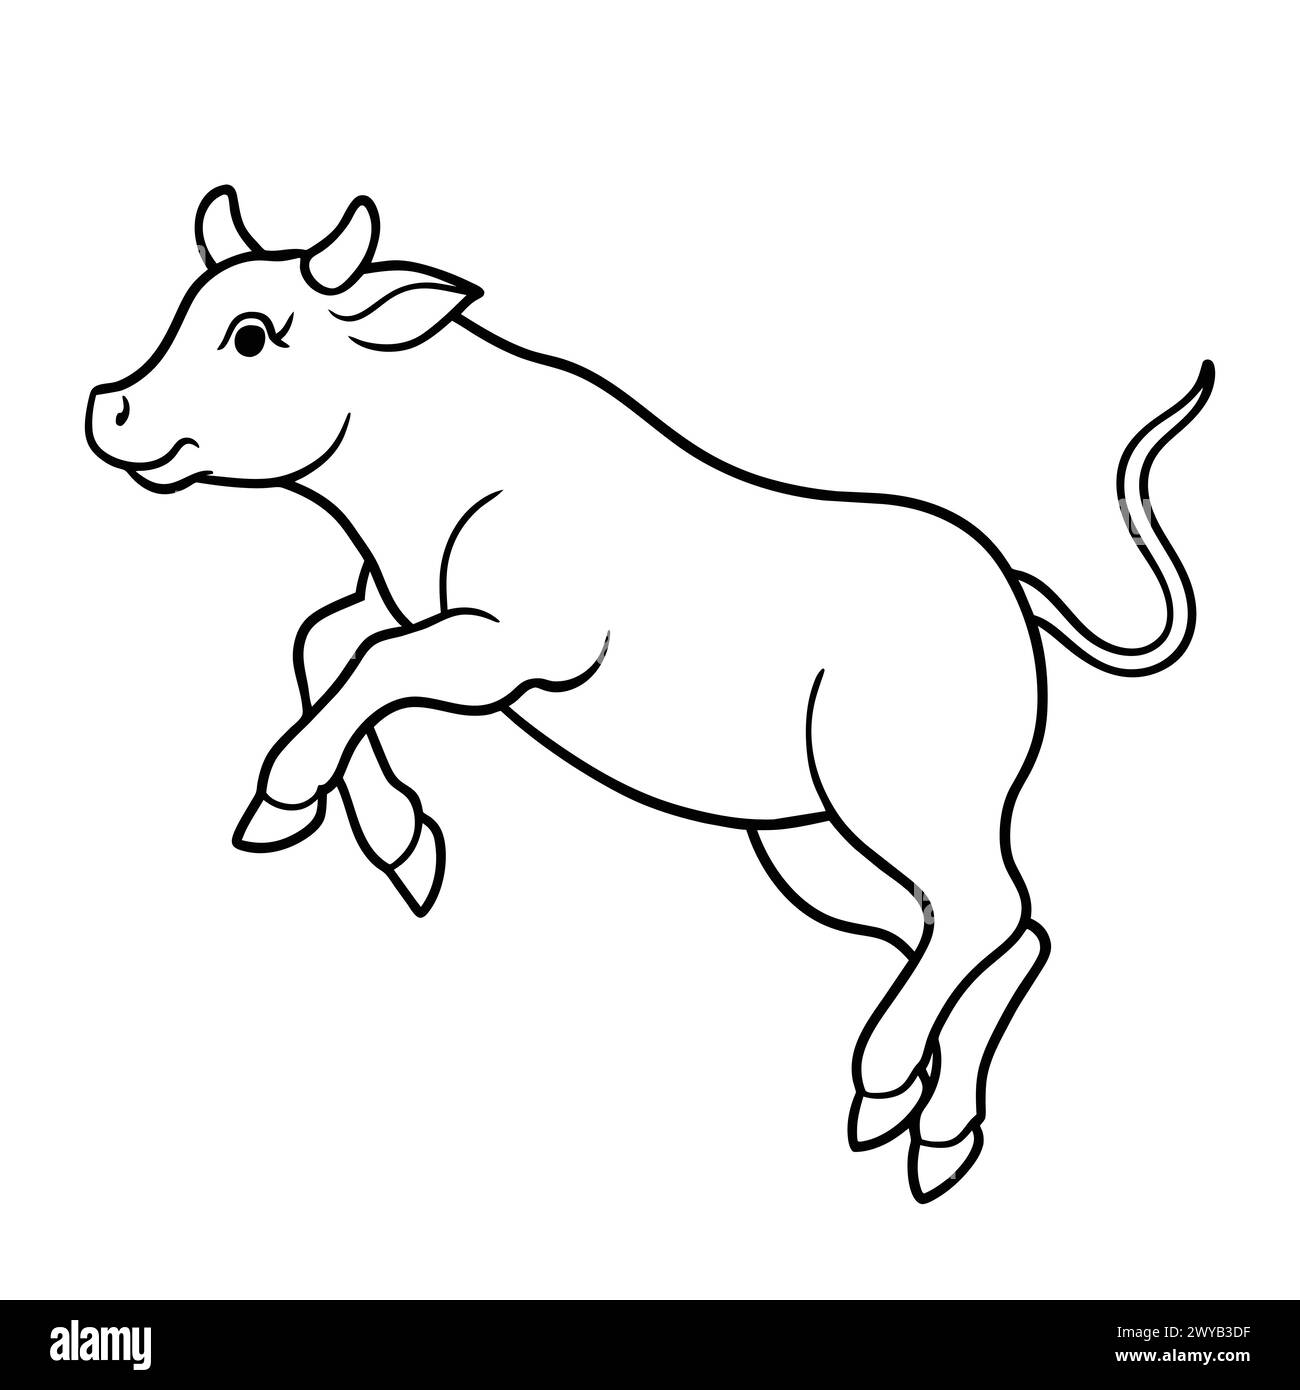 COW LINE ART DESIGN Stock Vector